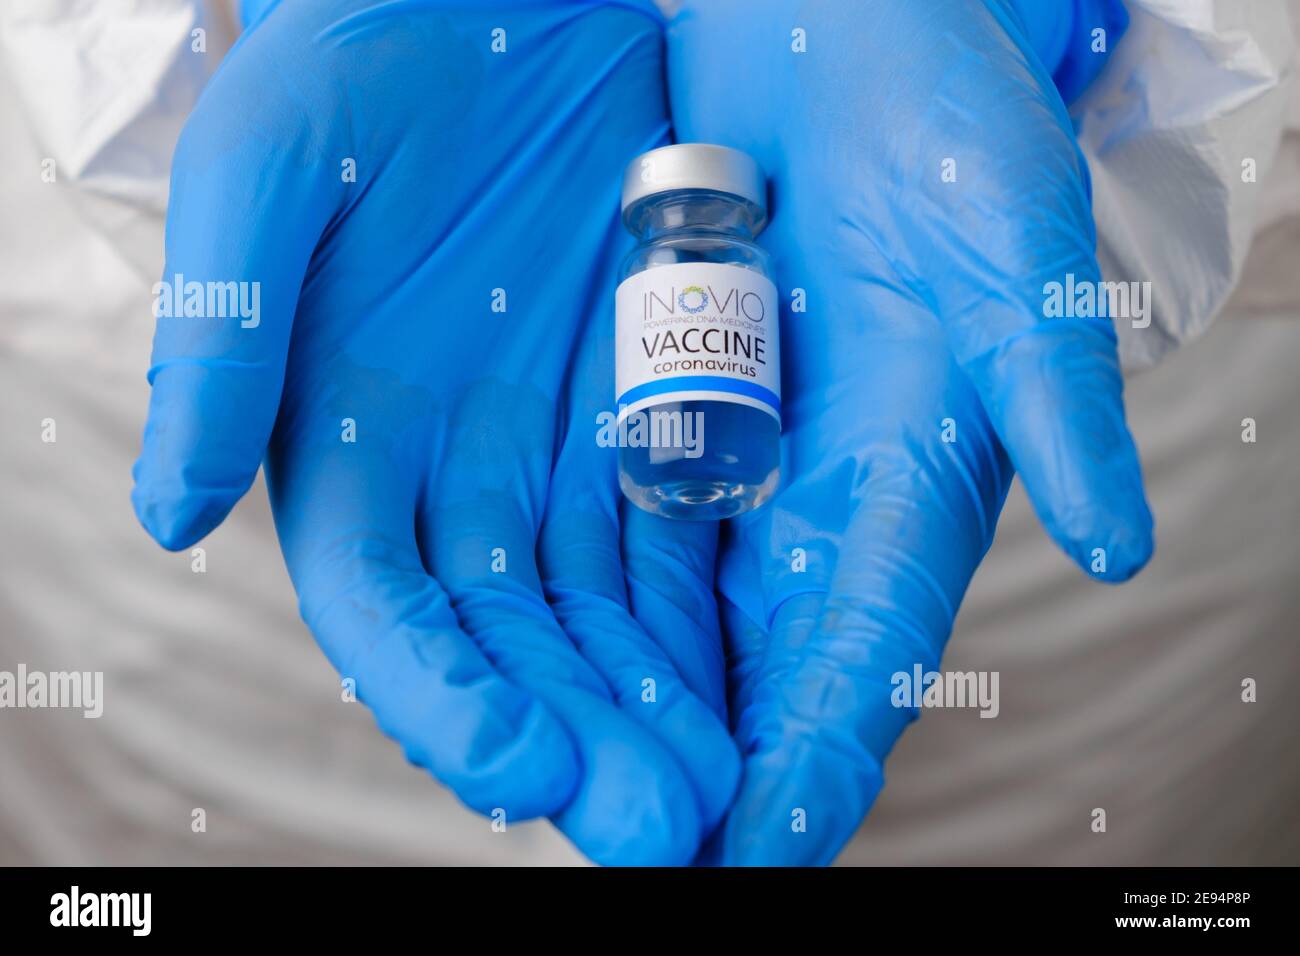 Vaccino INOVIO per la prevenzione del coronavirus, Covid-19, Sars-Cov-2 in medici mani in guanti di gomma blu, gennaio 2021, San Francisco, USA. Foto Stock